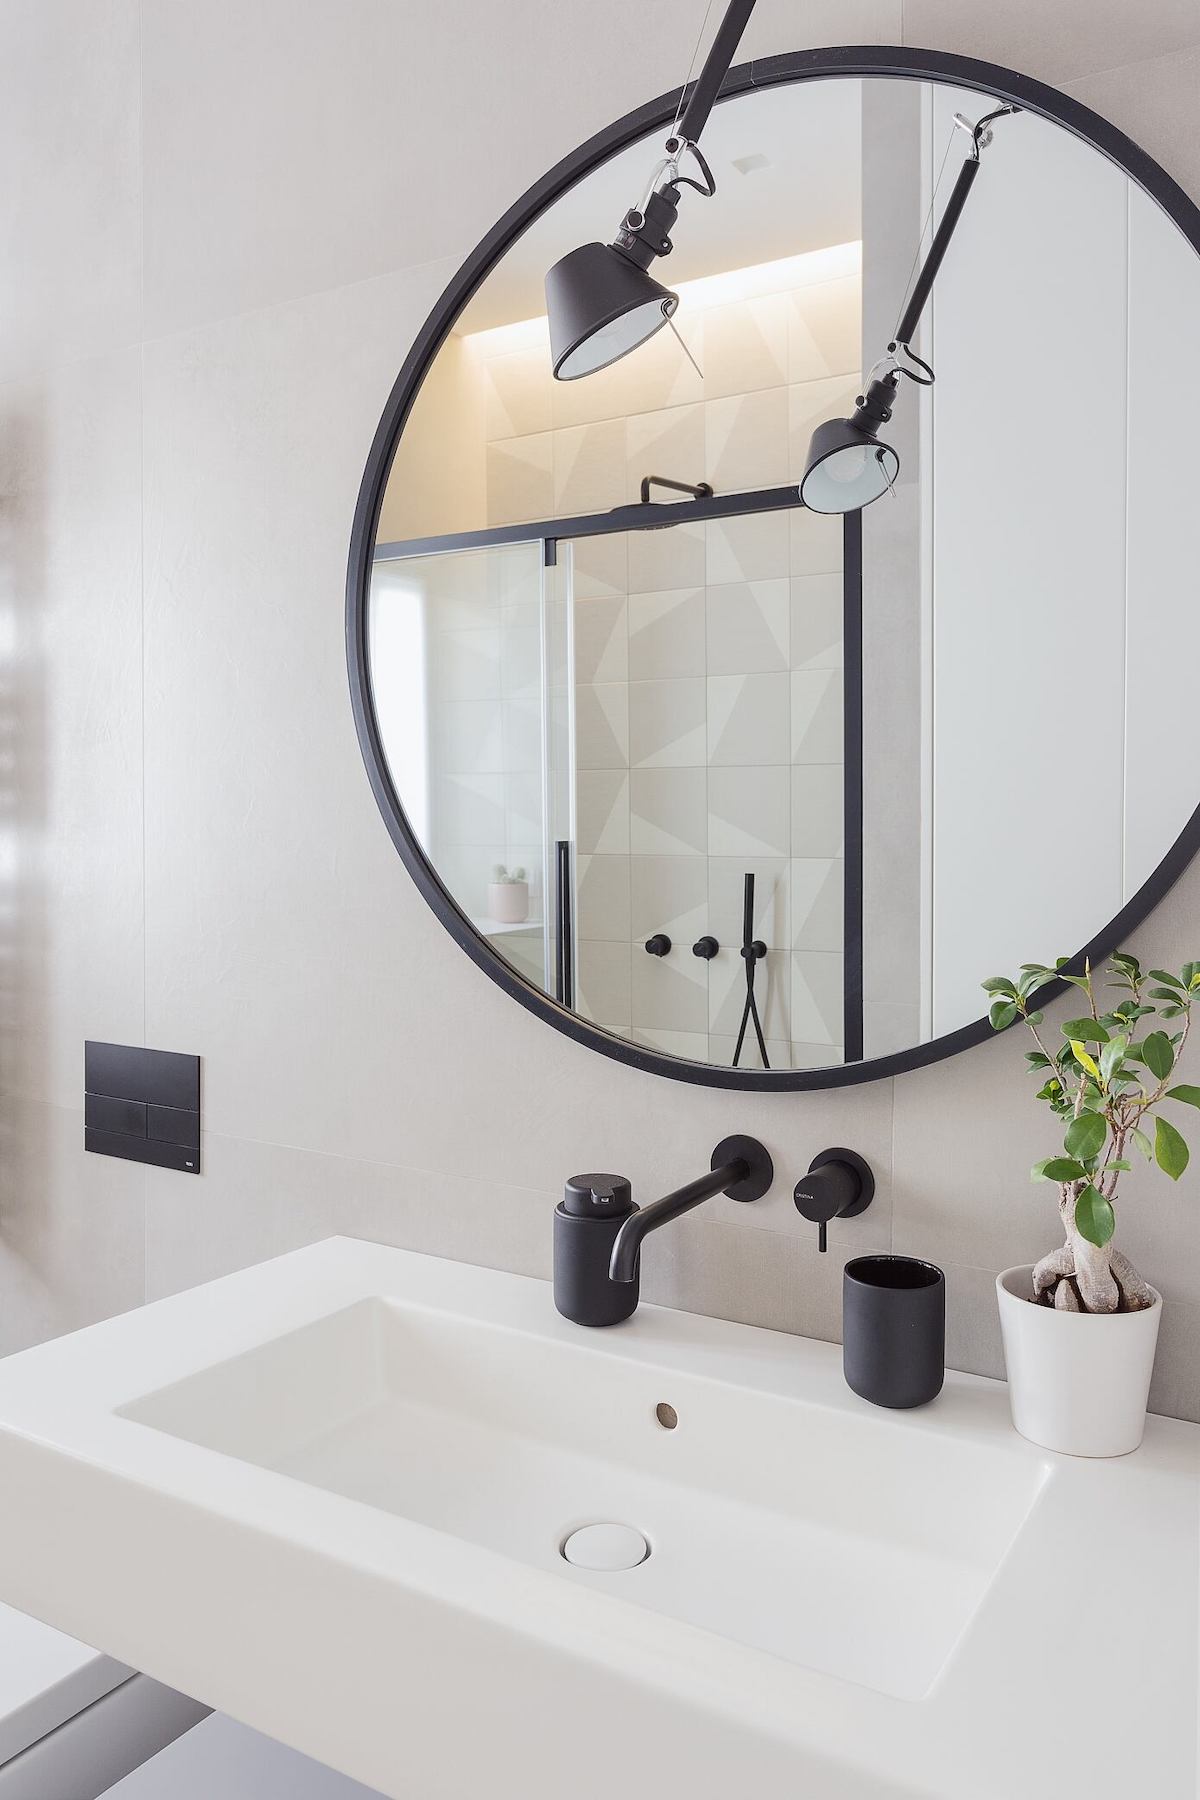 salle de bain blanche noire mat vasque suspendue miroir rond applique industrielle